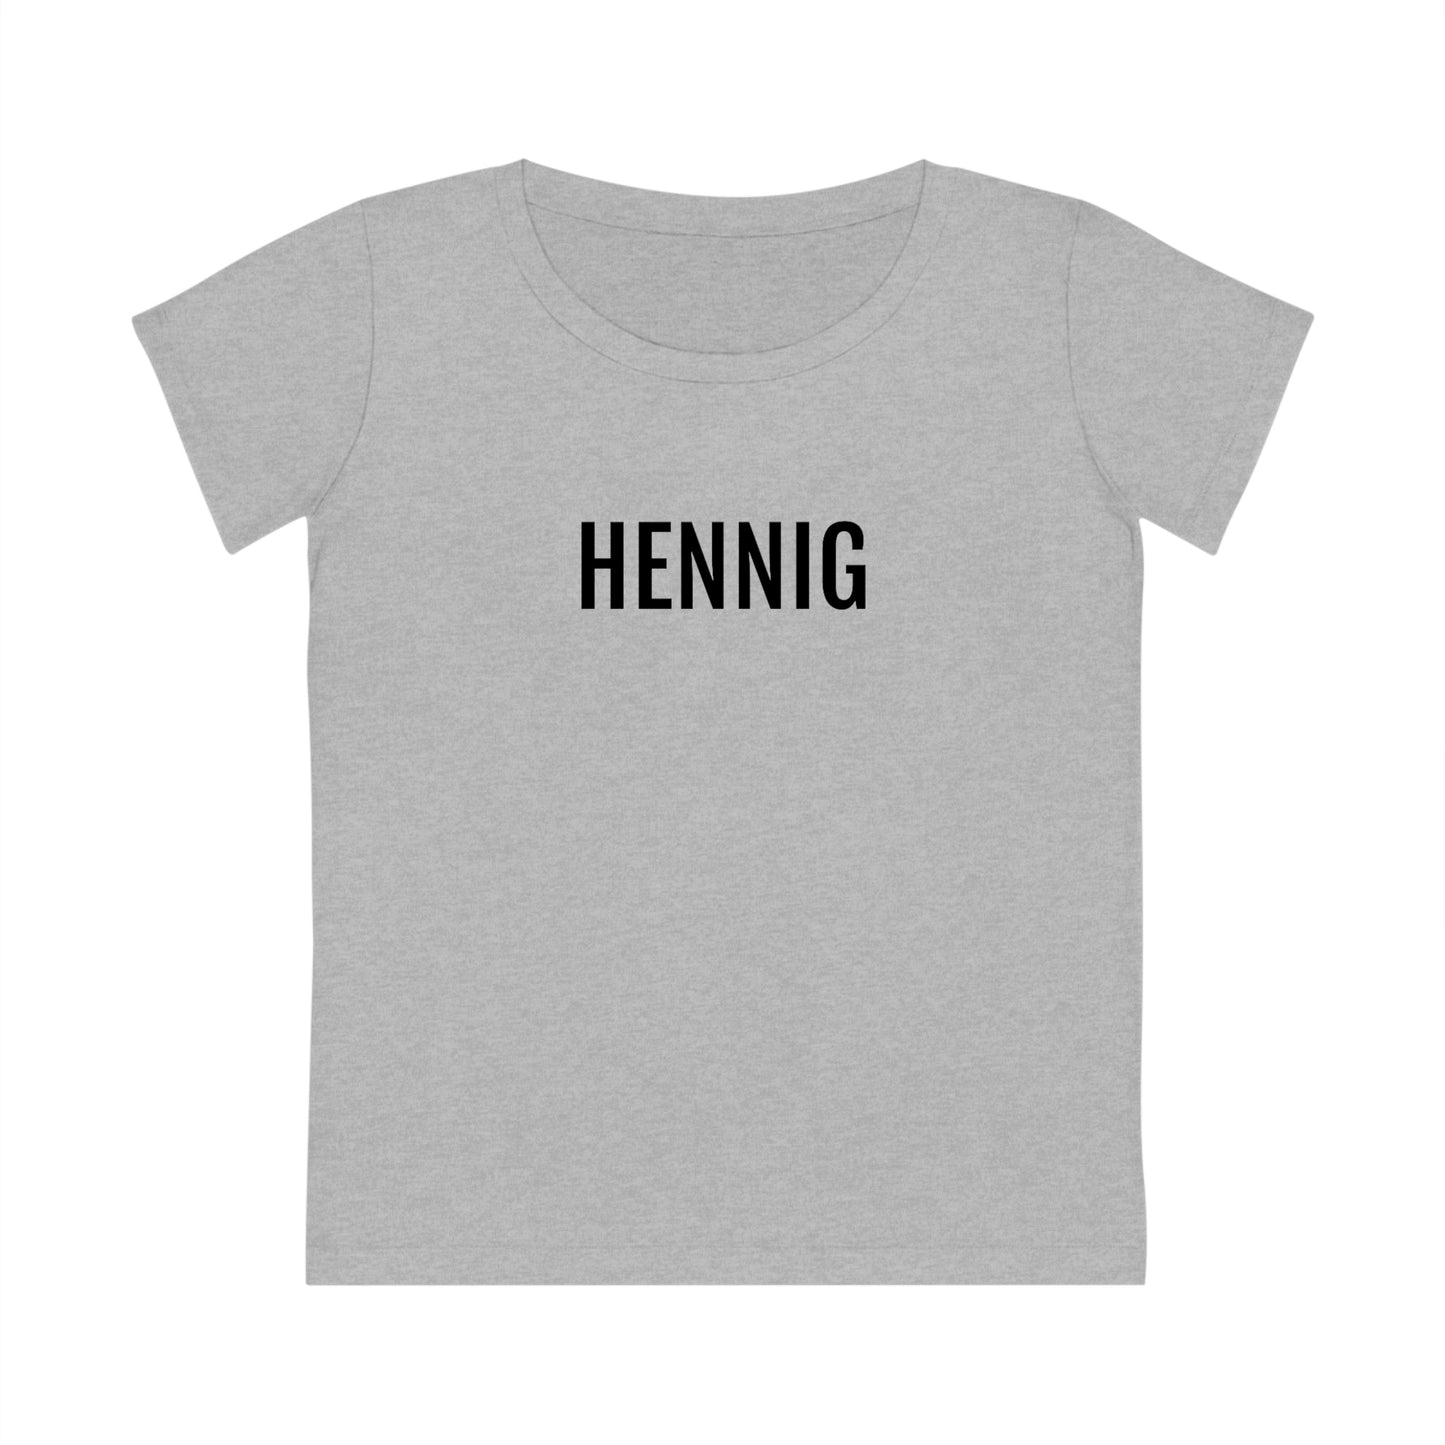 HENNIG | Dames T-Shirt uit Limburg - Grijs